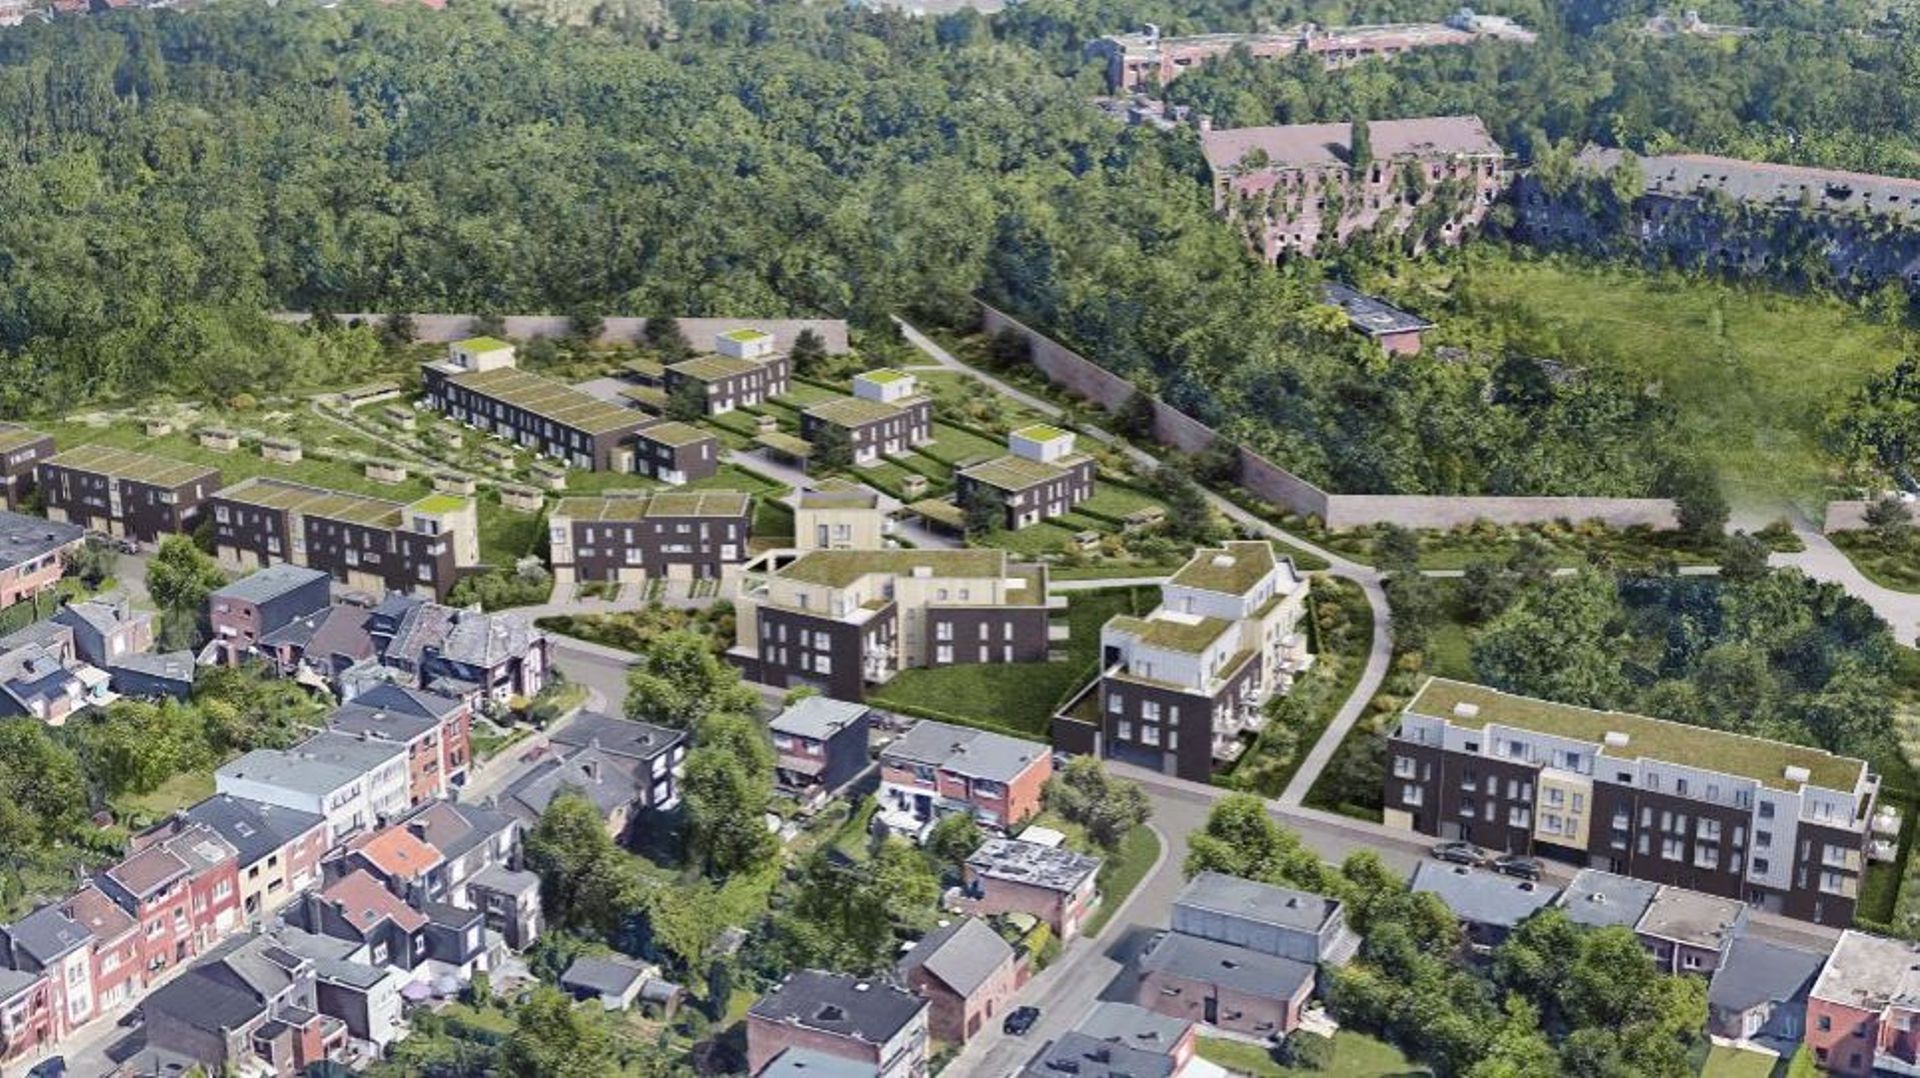 Bientôt 74 logements sur l'ancien site militaire de la Chartreuse? L'enquête publique est en cours